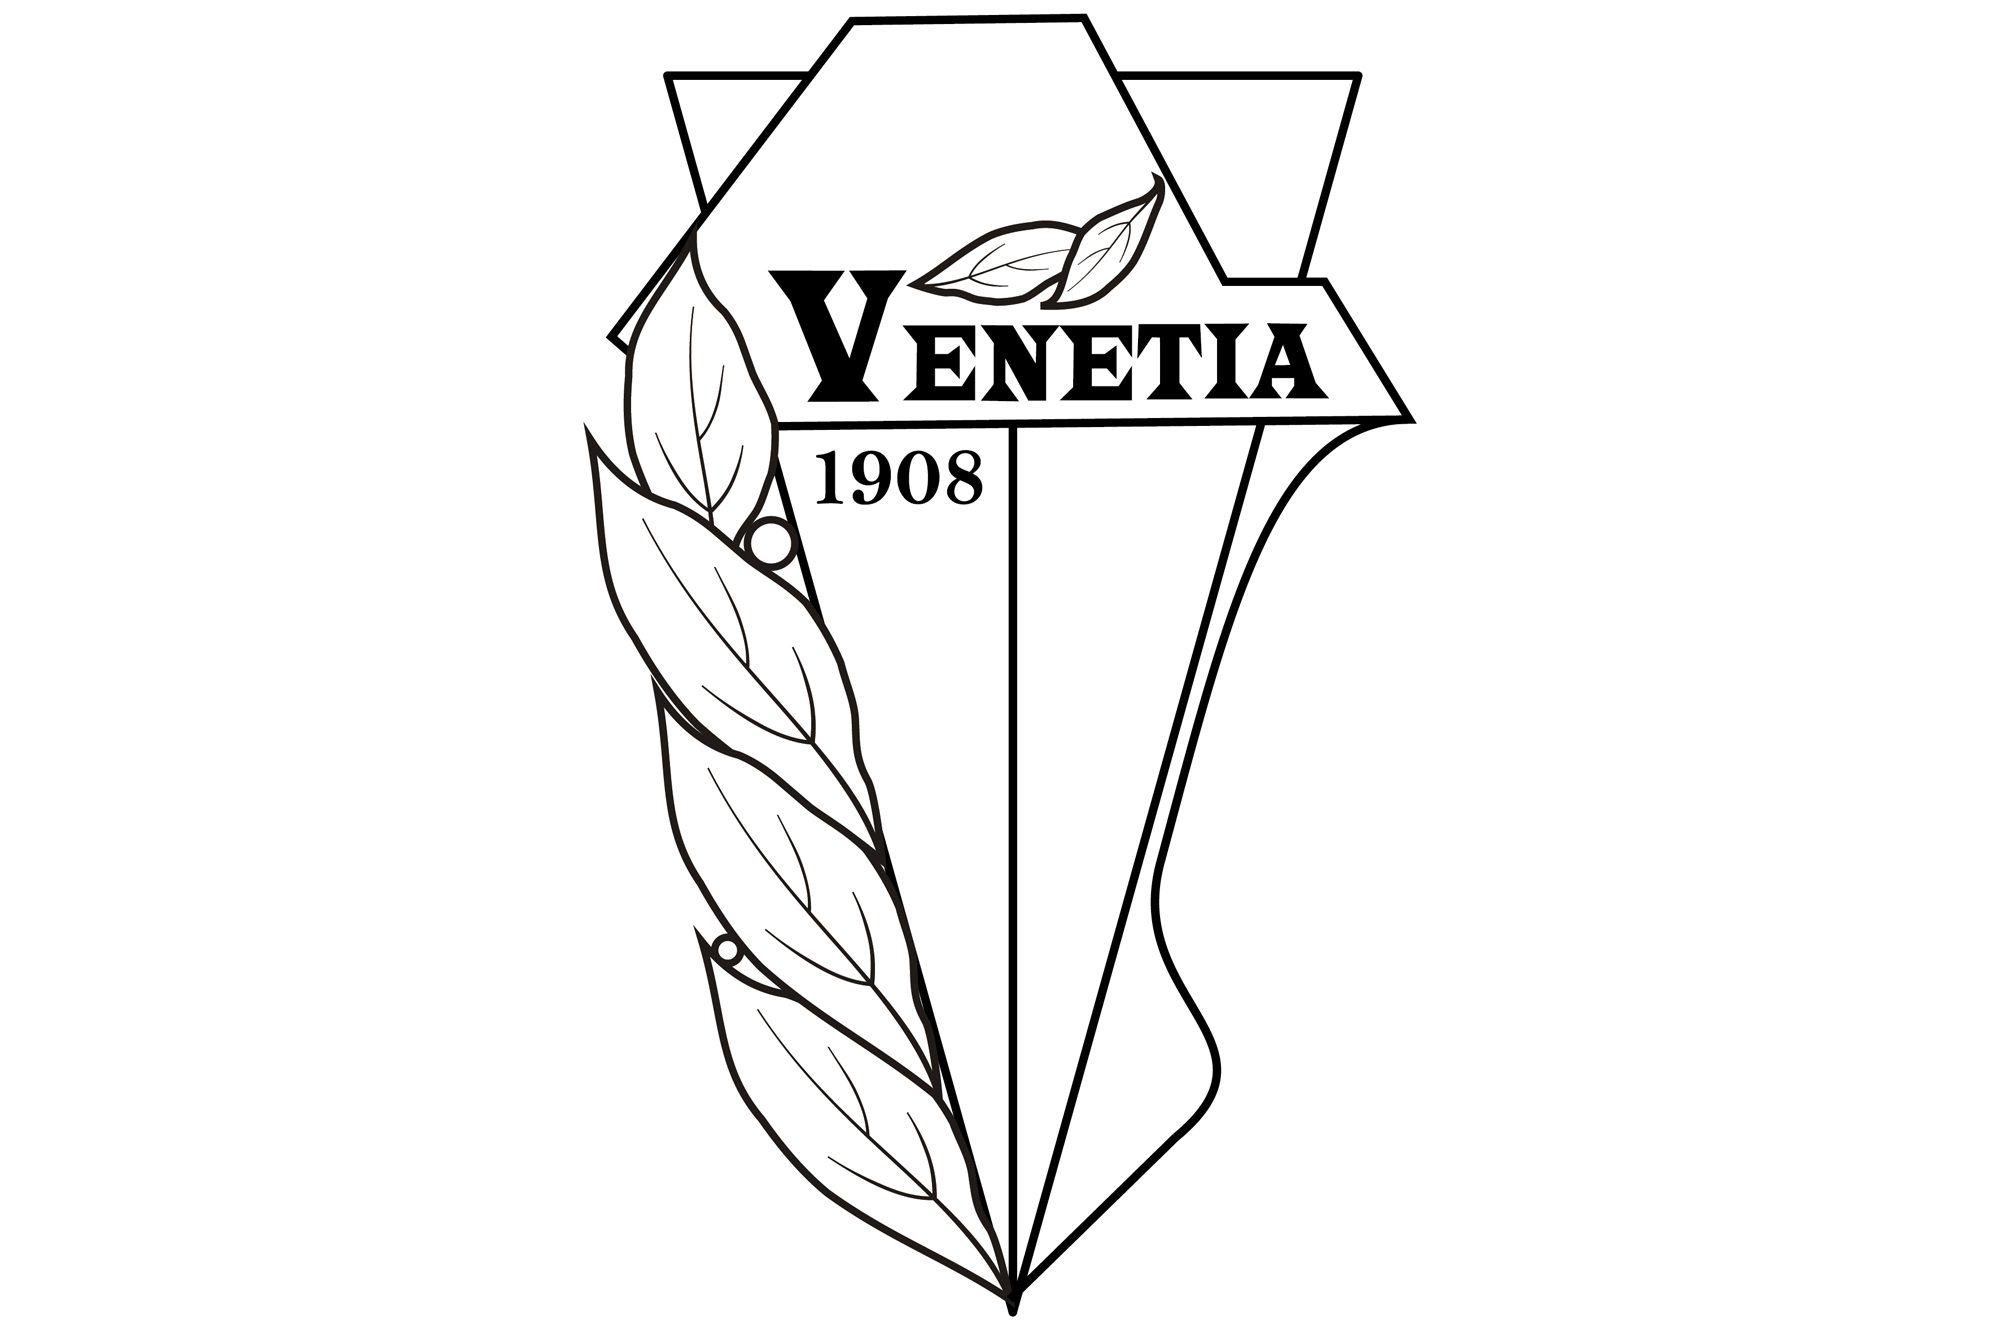 Venetia - logo PLANSZA 30x30cm EDYCJA